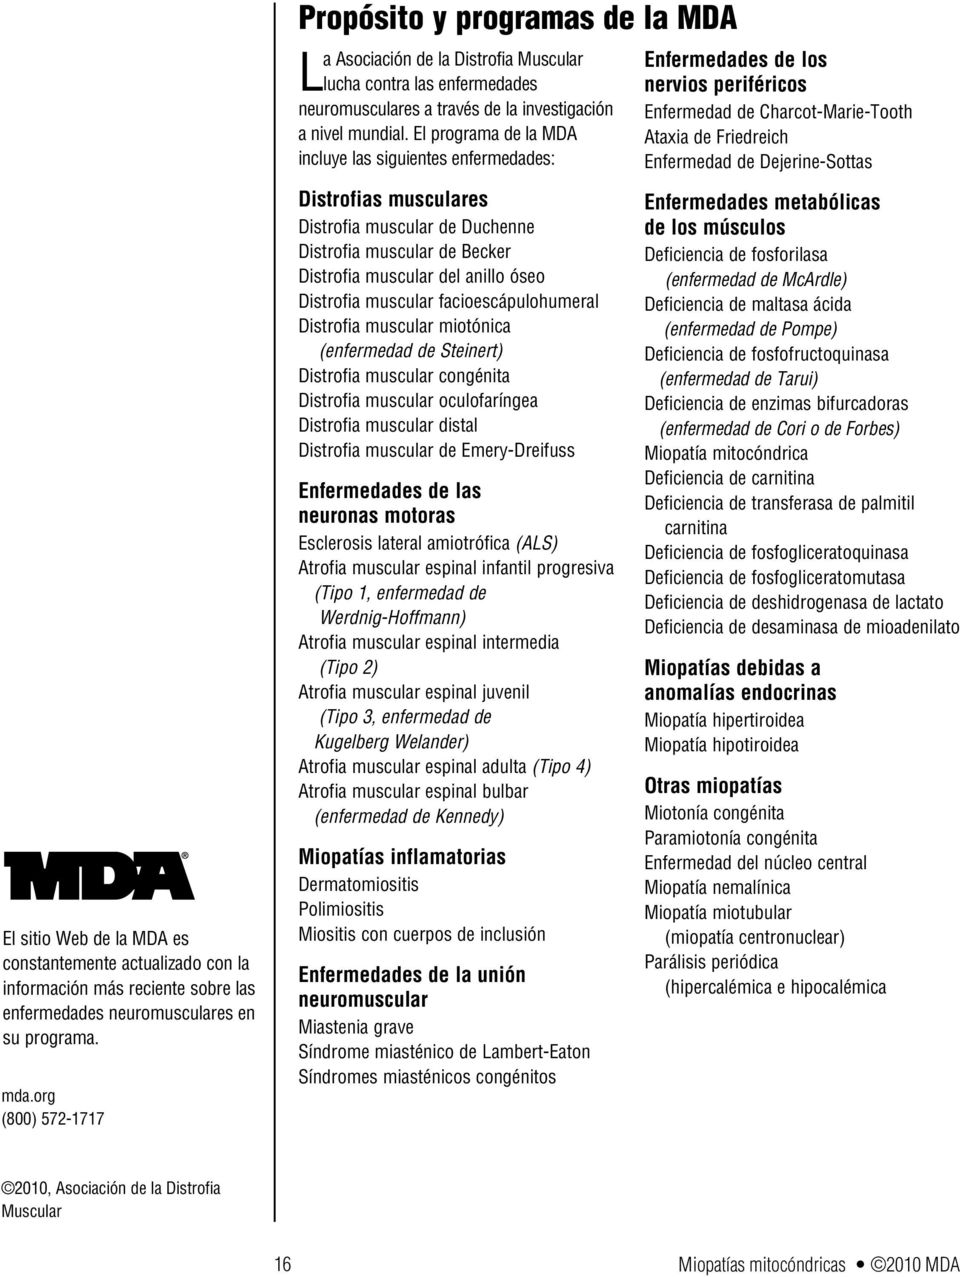 El programa de la MDA incluye las siguientes enfermedades: Distrofias musculares Distrofia muscular de Duchenne Distrofia muscular de Becker Distrofia muscular del anillo óseo Distrofia muscular